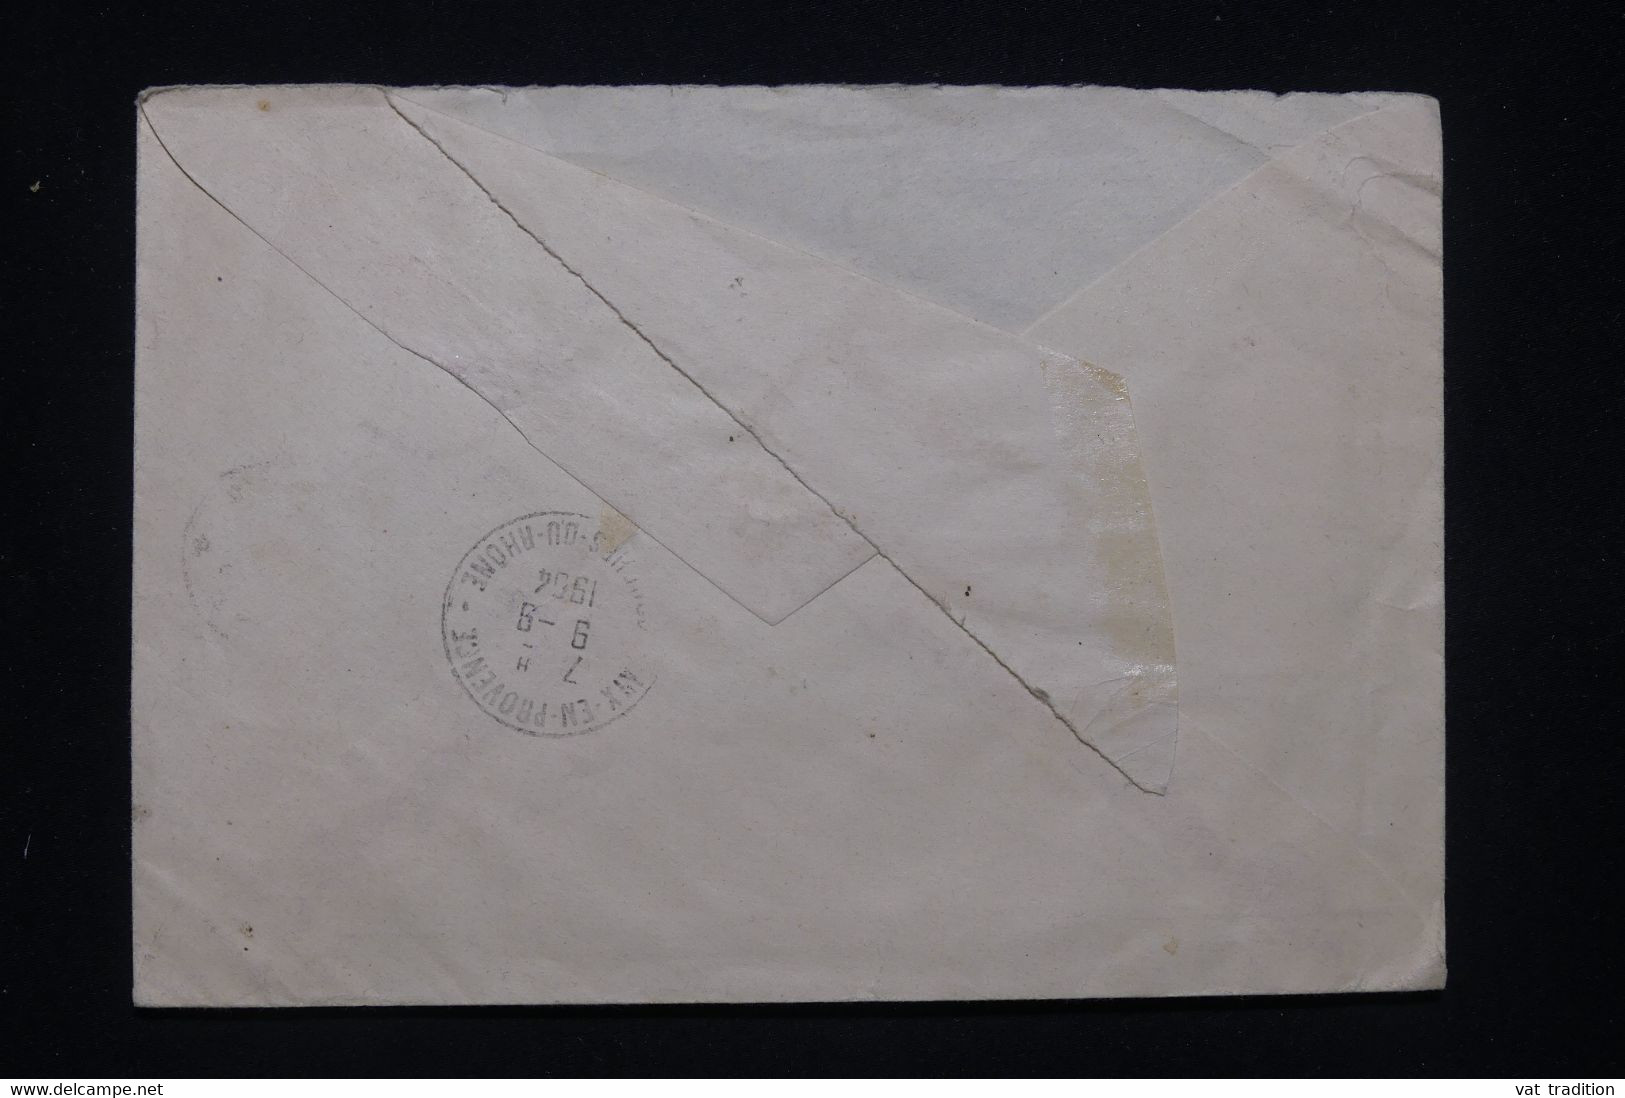 POLOGNE - Enveloppe En Recommandé  De Warszawa Pour La France En 1964 - L 100241 - Covers & Documents